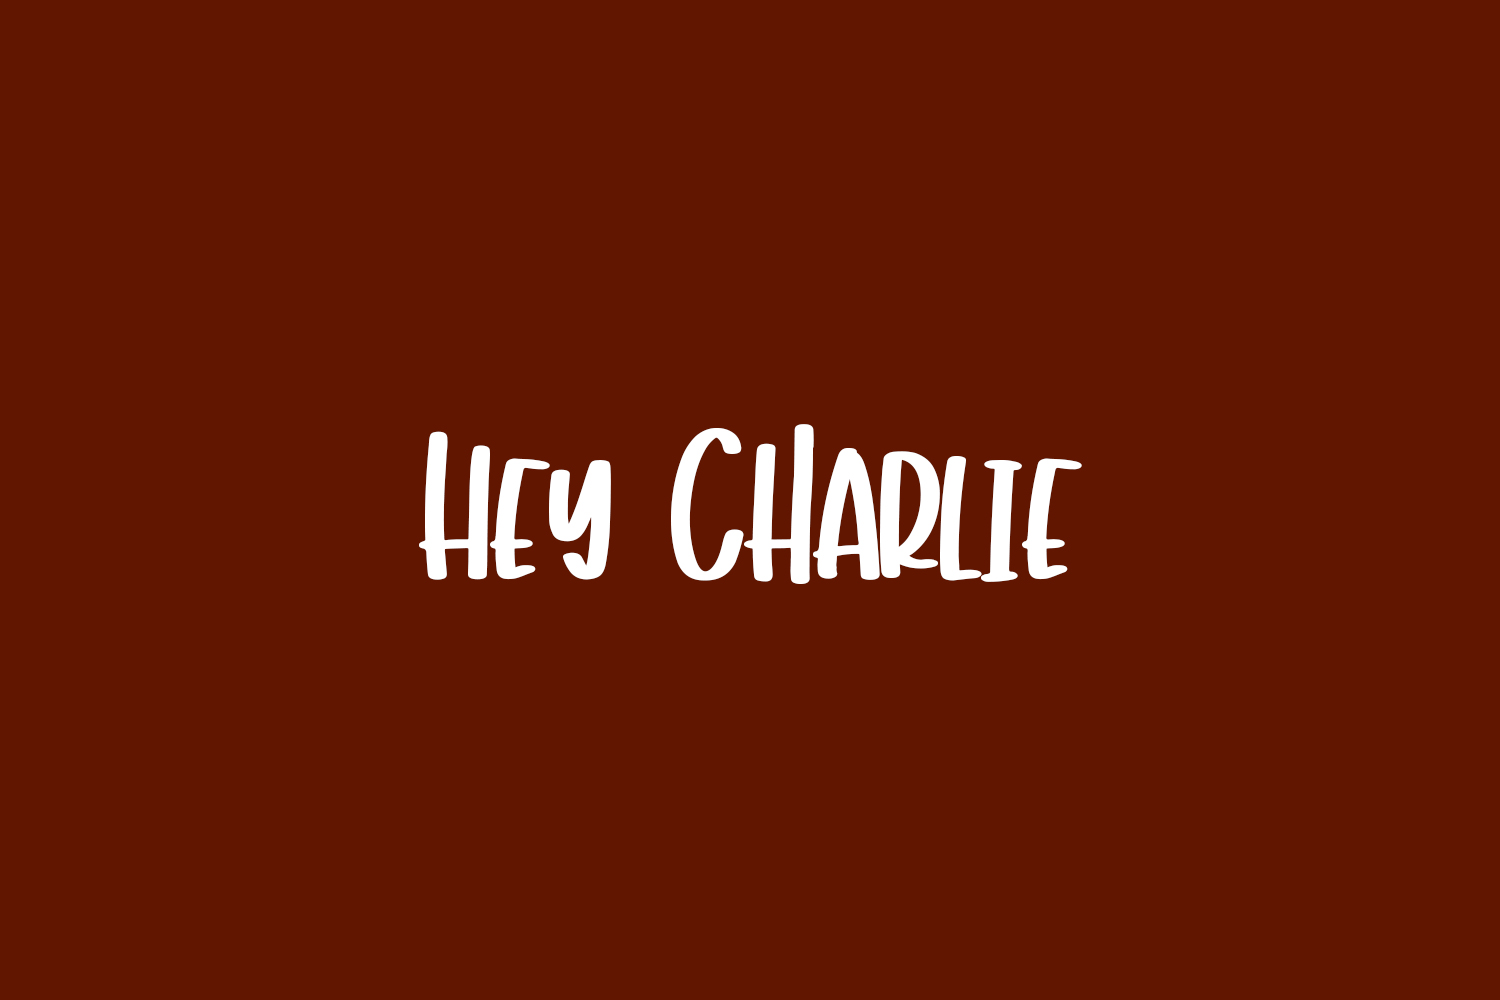 Hey Charlie